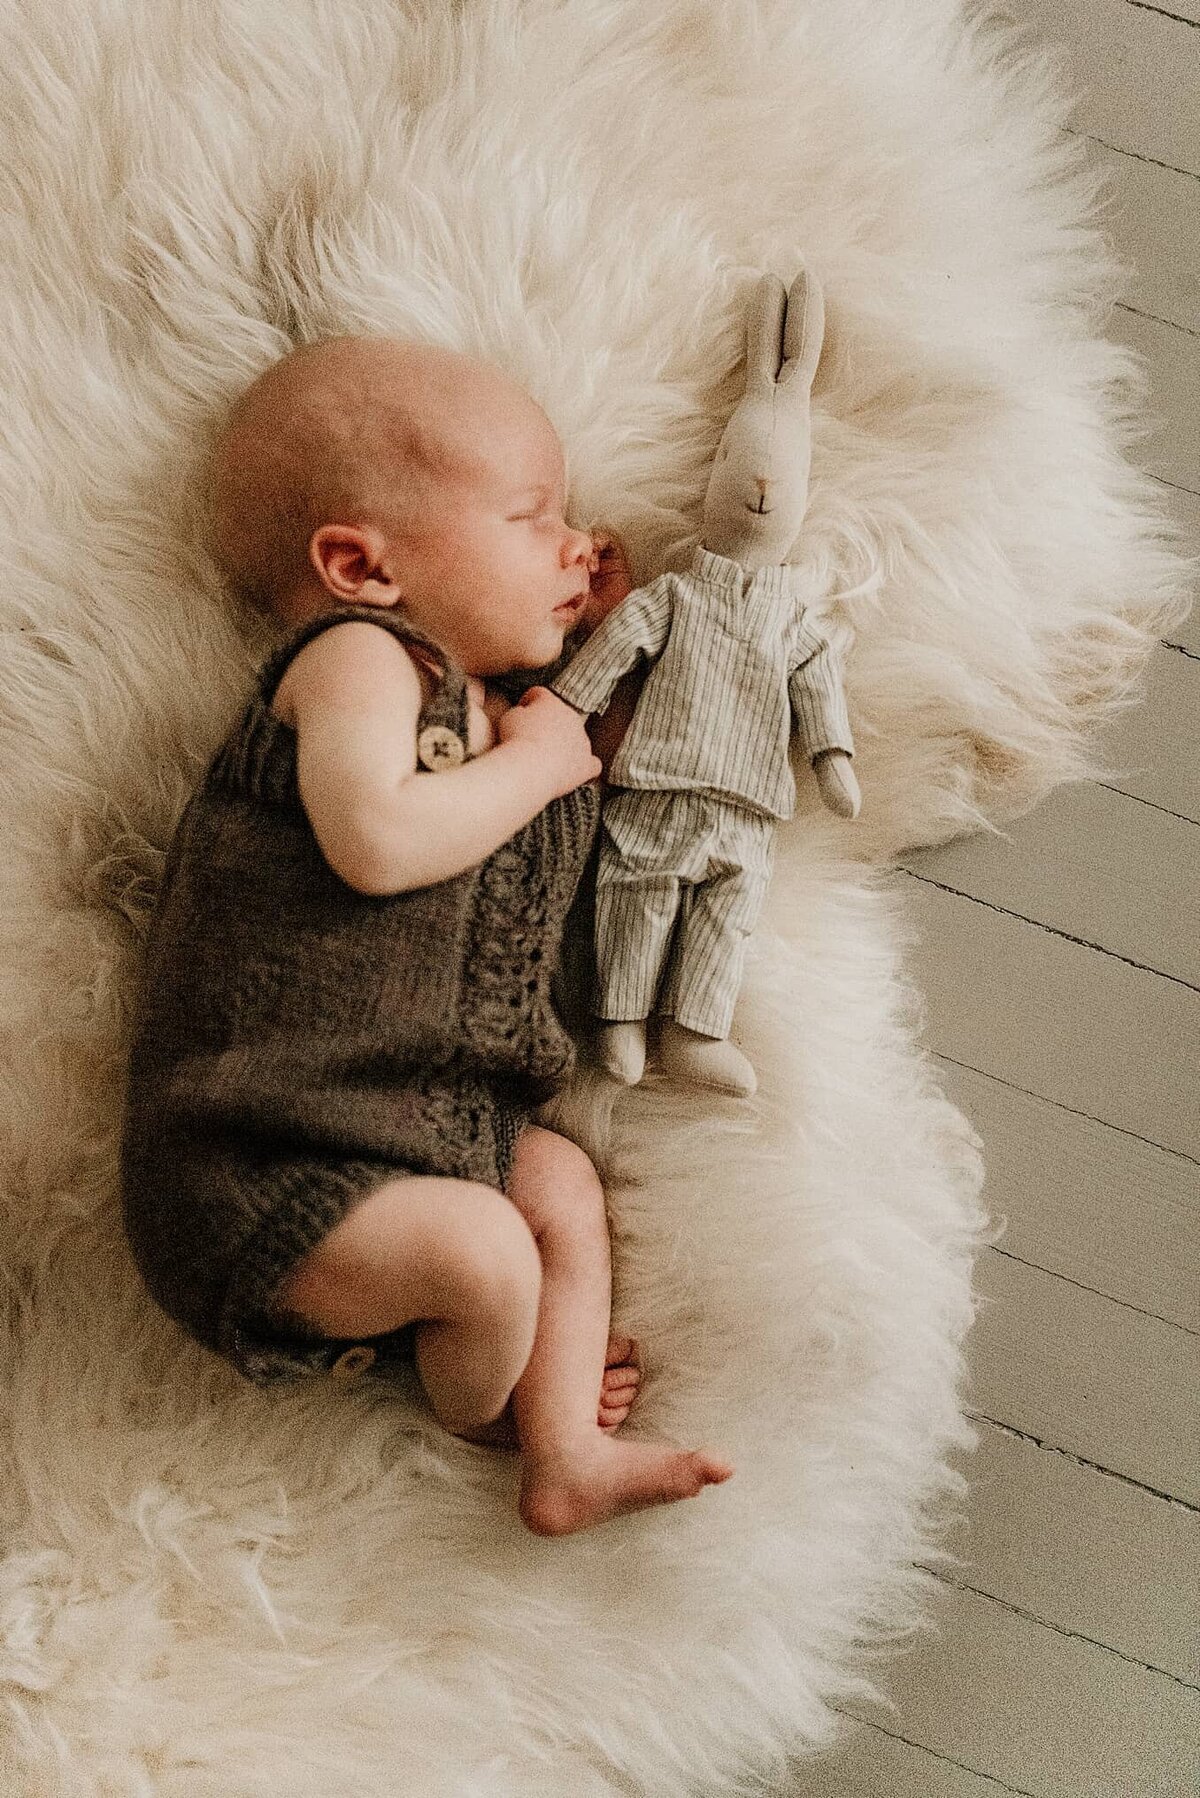 En nyfødt gutt ligger på saueskinn og sover under nyfødtfotografering.